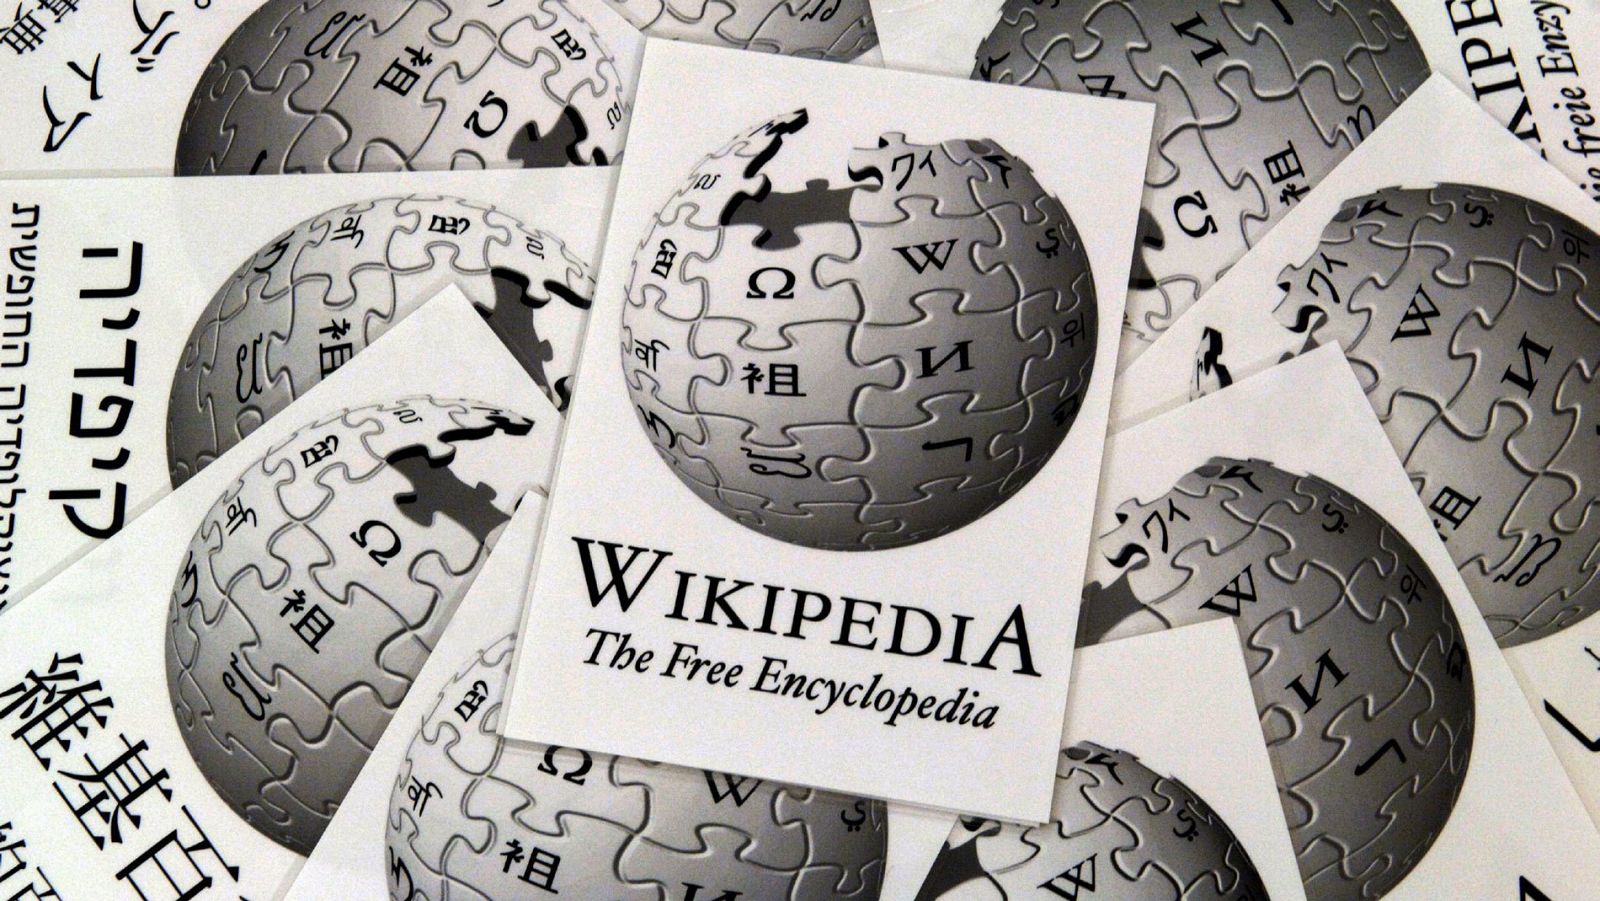 Varios folletos con el logotipo de Wikipedia en varios idiomas.